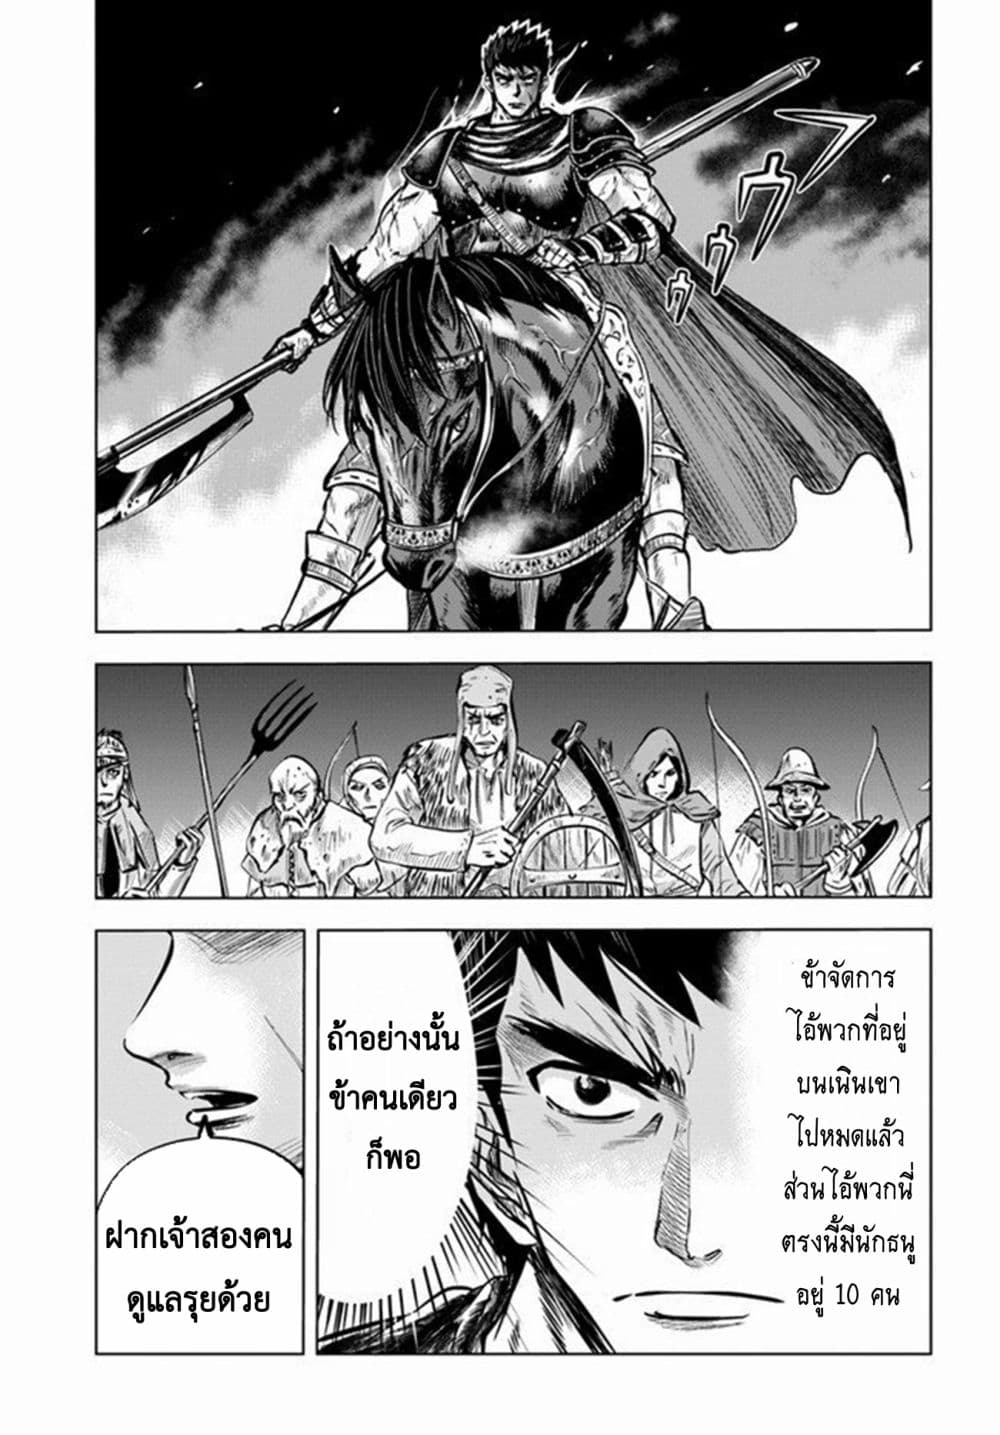 Oukoku e Tsuzuku Michi dorei Kenshi no Nariagari Eiyutan (Haaremu Raifu) - Road to the Kingdom Slave Swordsman the Rise of Heroes - Harem Life 8.1-8.1